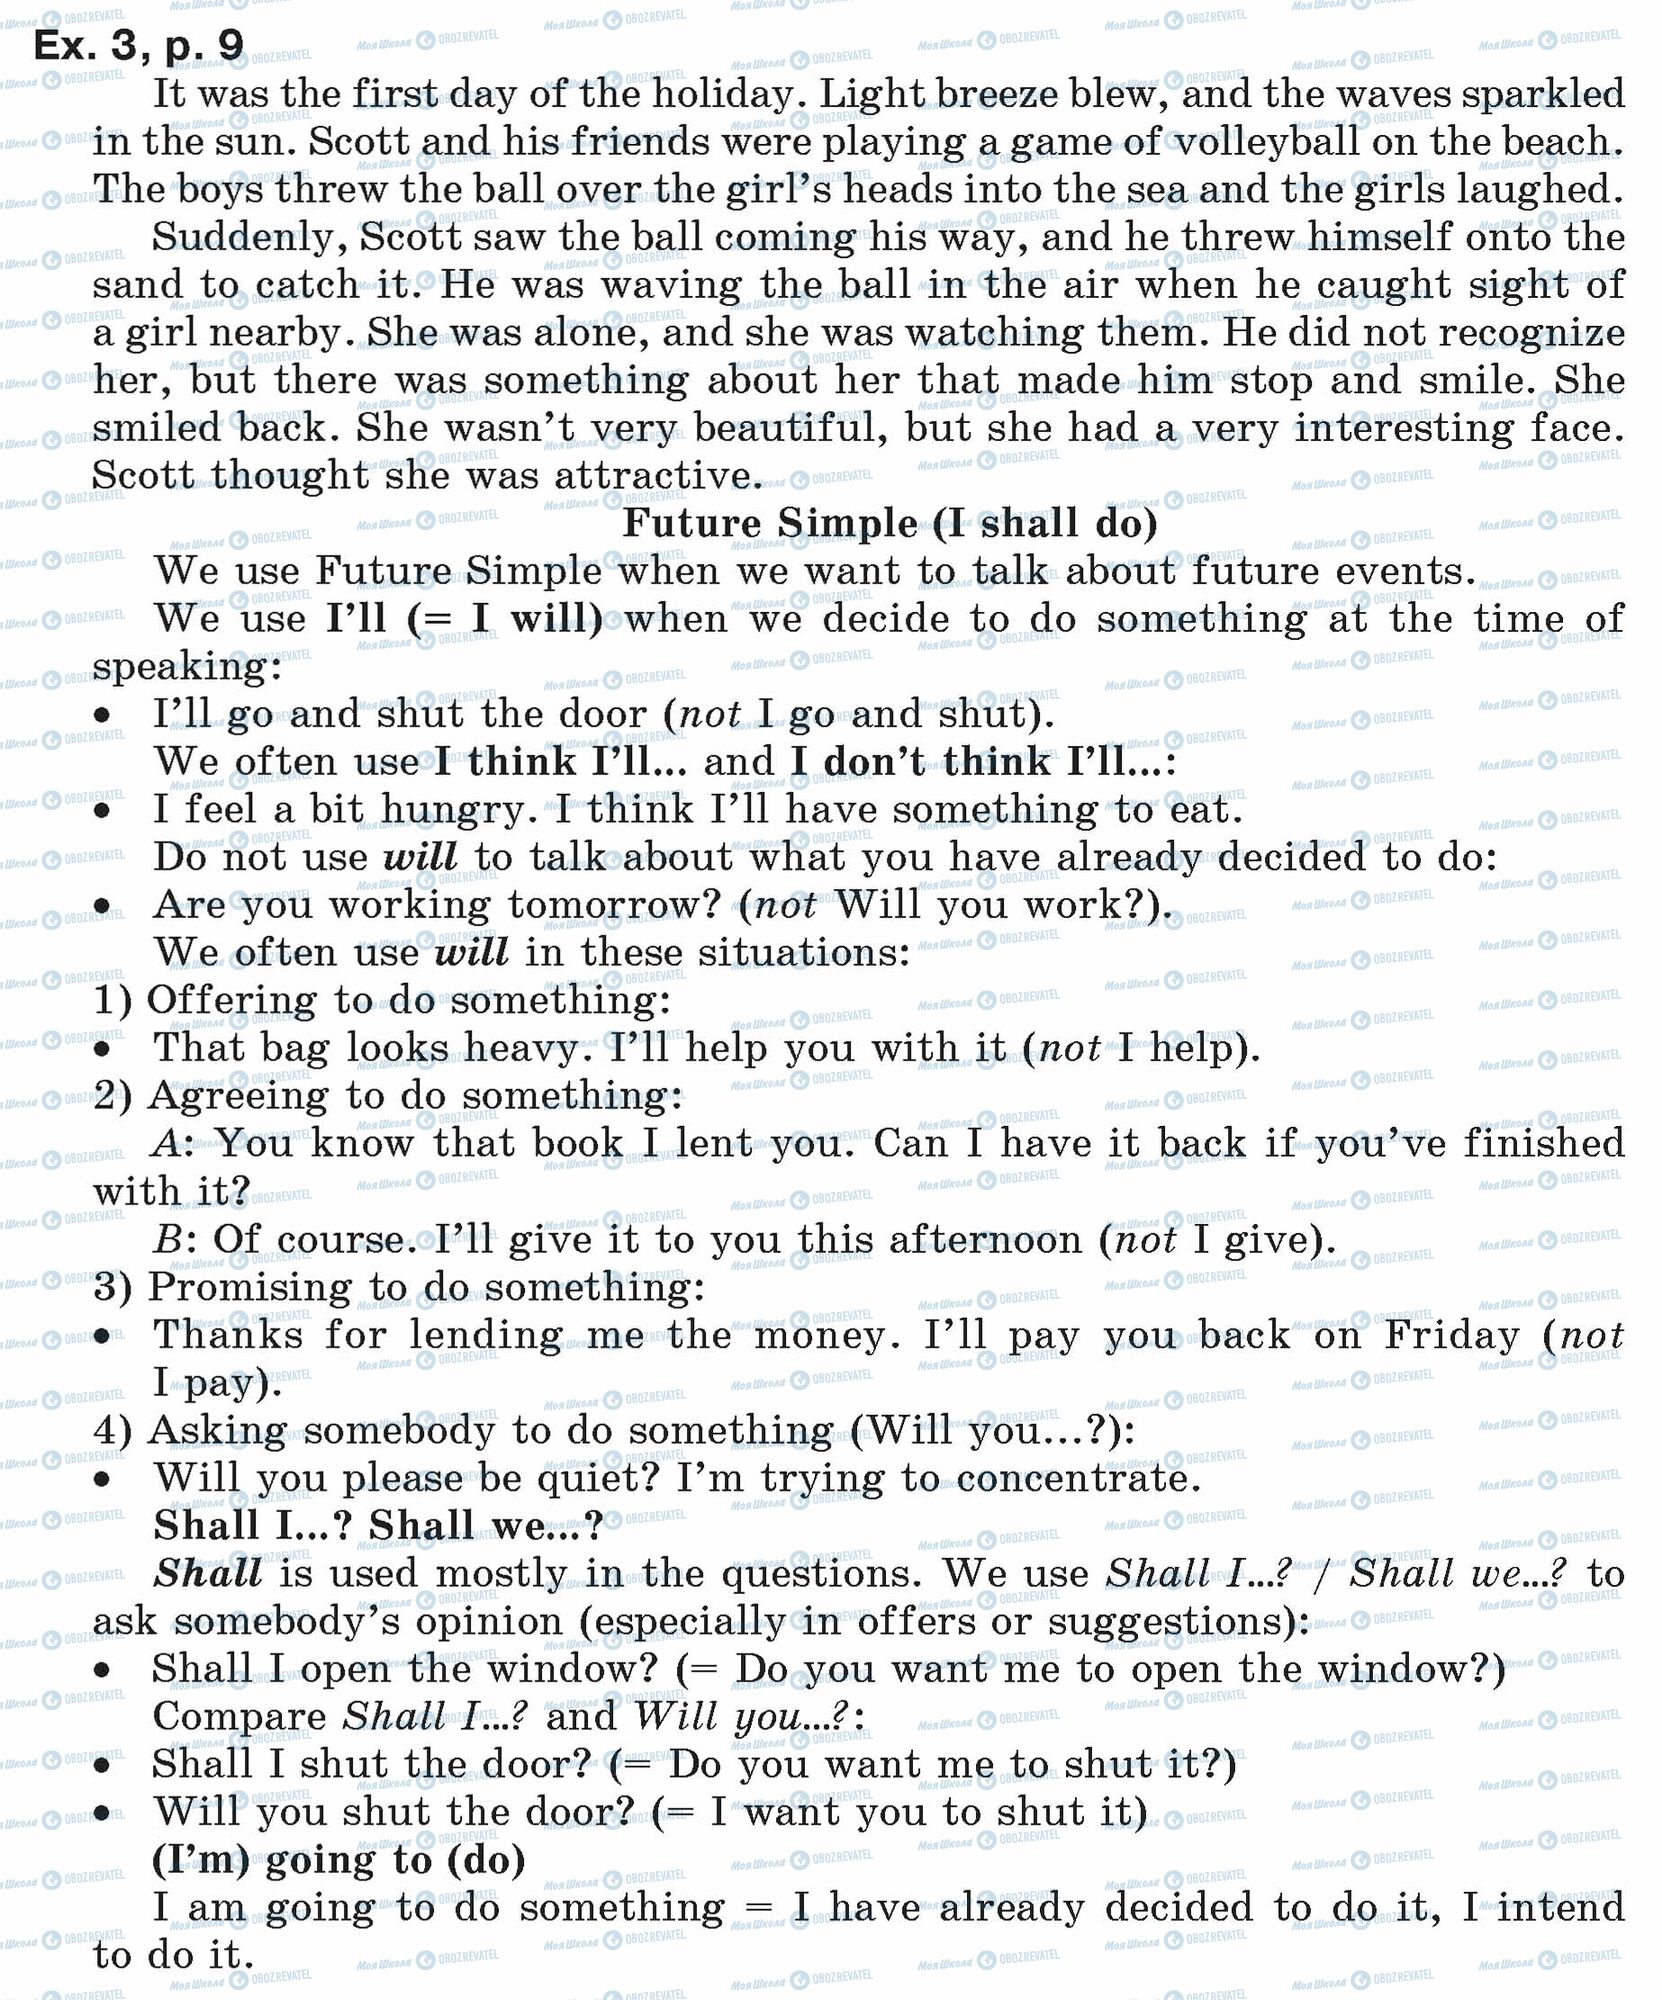 ГДЗ Англійська мова 7 клас сторінка ex.3.p.9